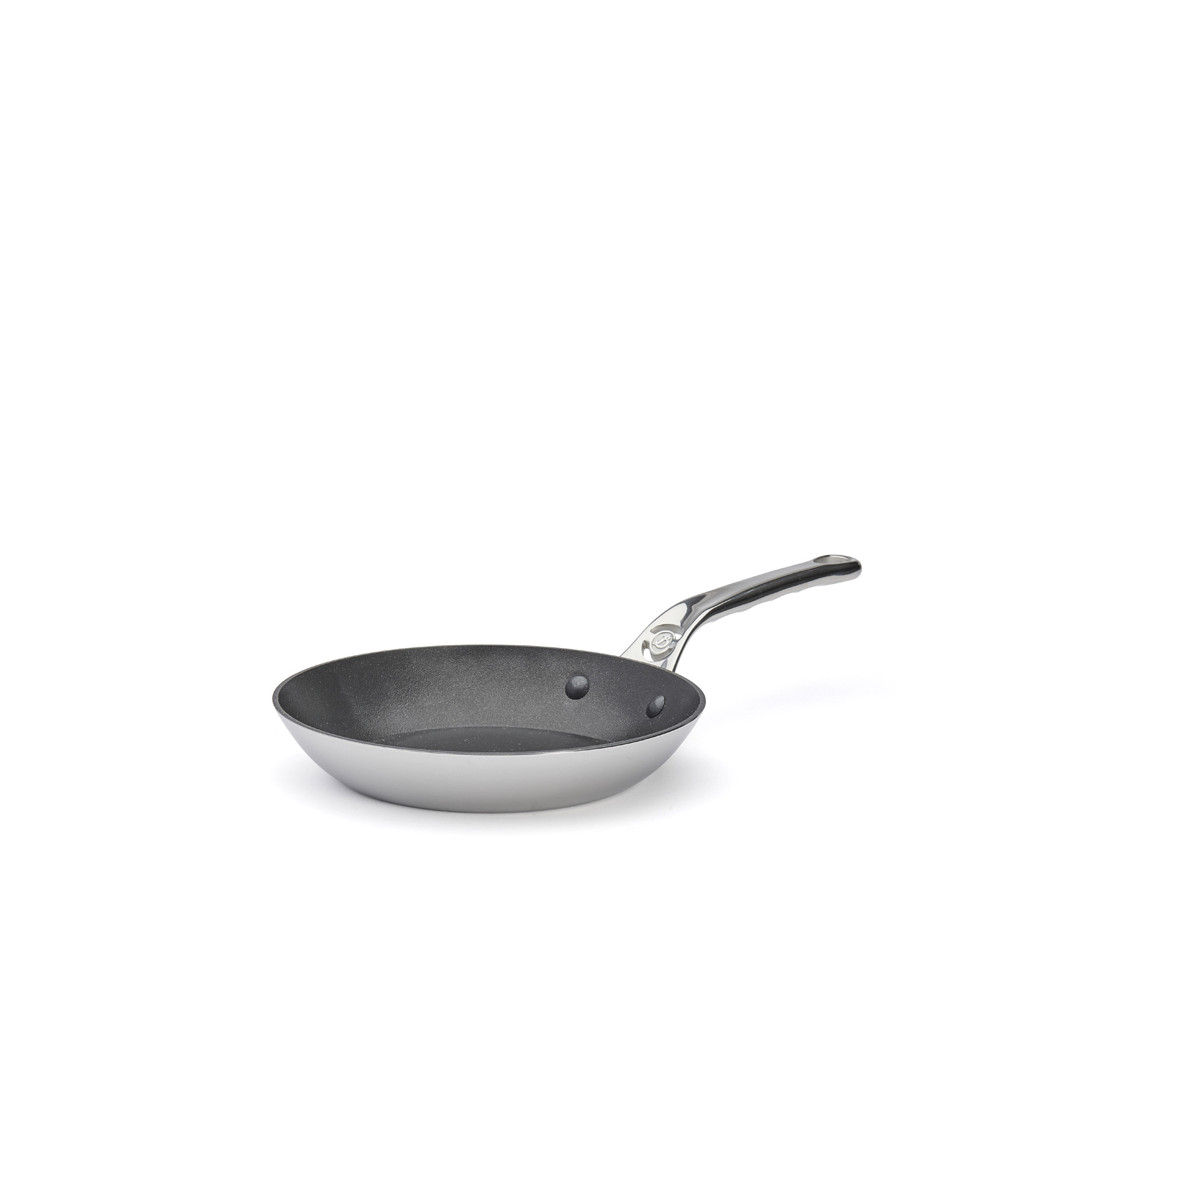 Frying pan AFFINITY 20 cm, steel, de Buyer 